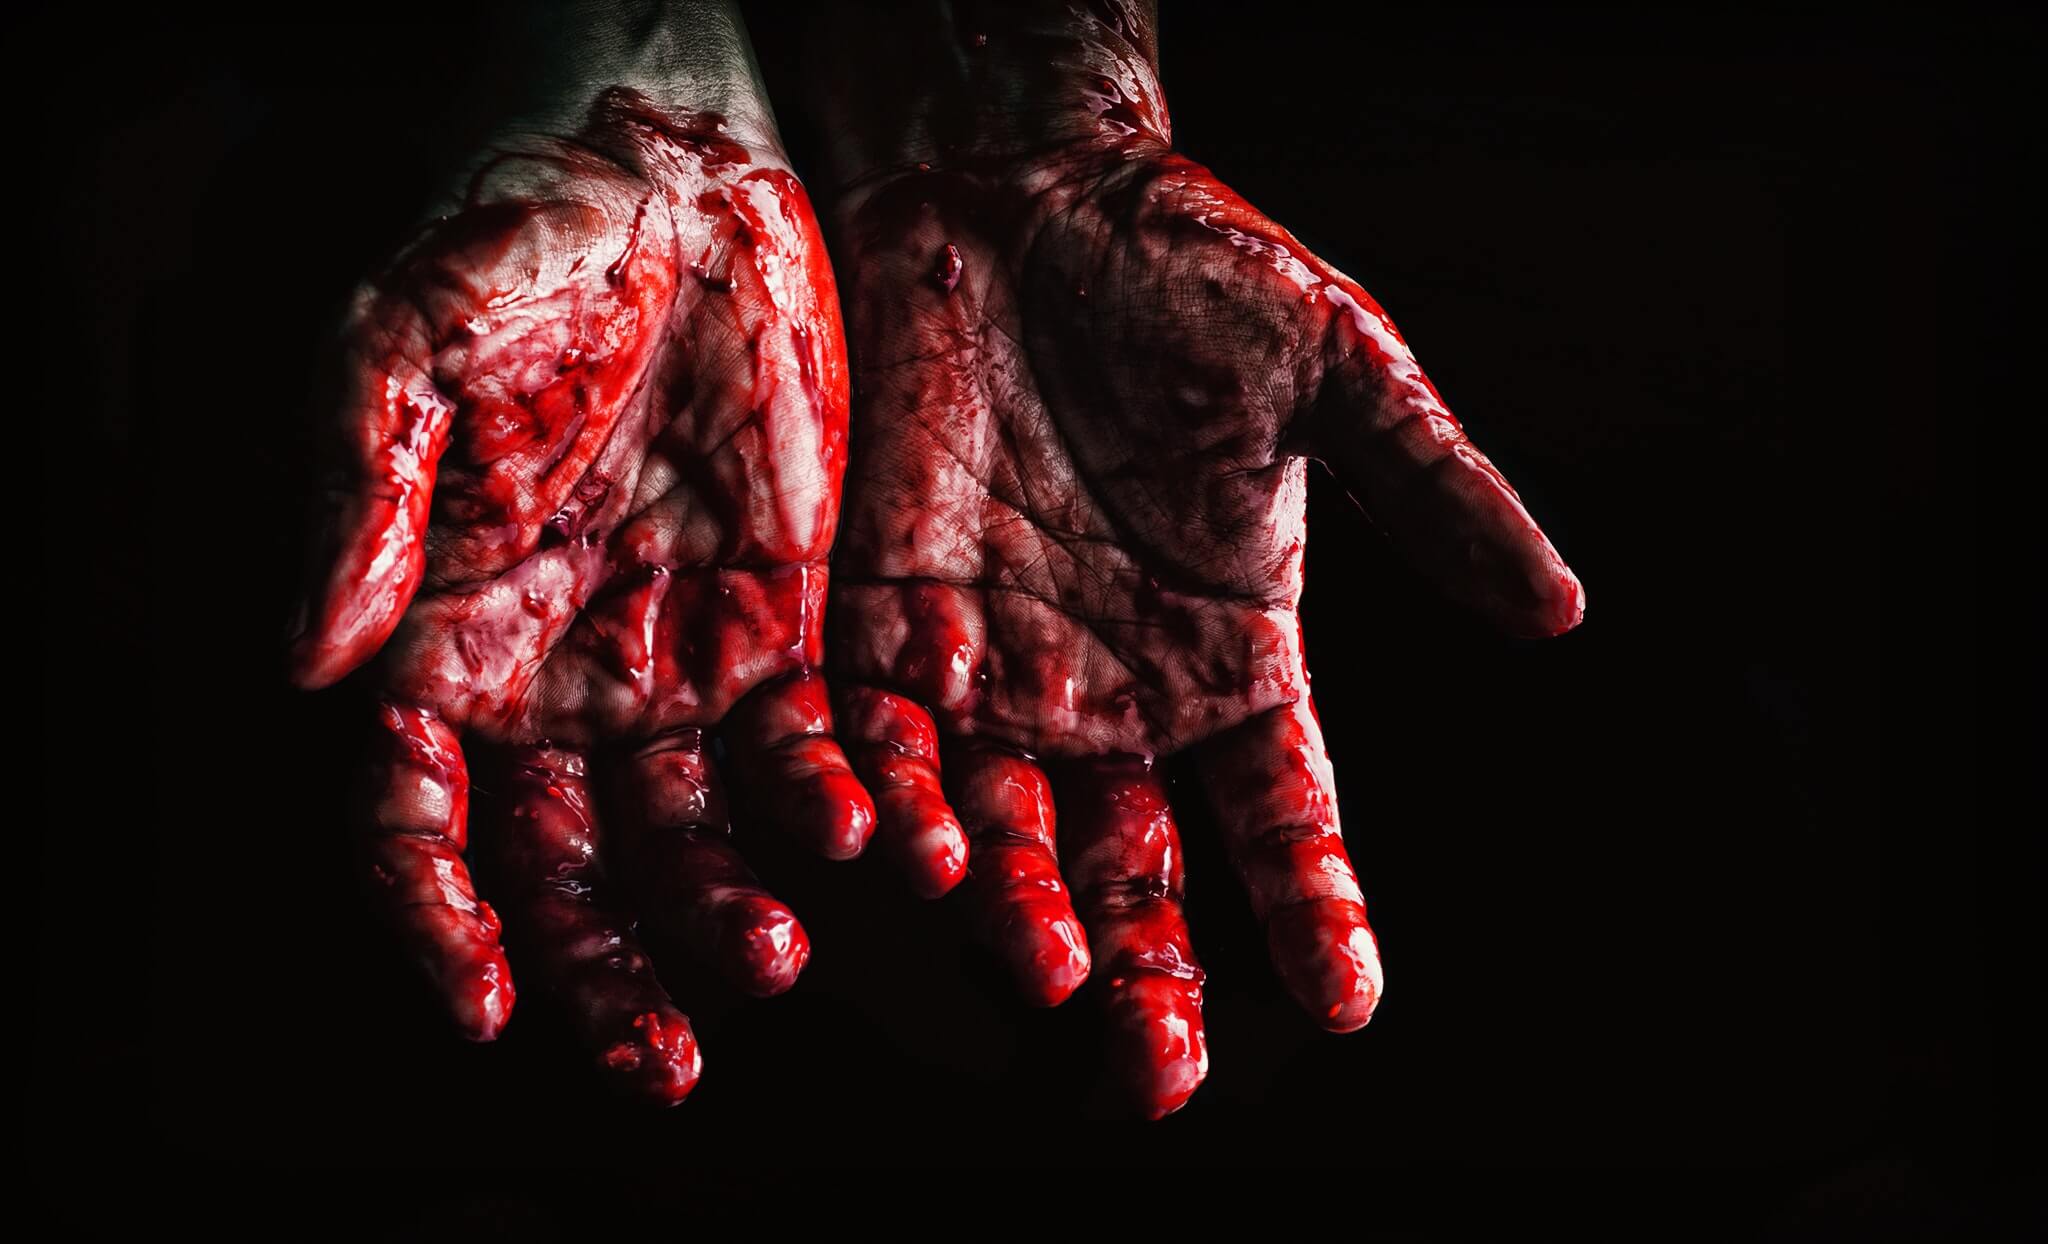 Twee handen die doordrenkt zijn met bloed, mogelijk van een seriemoordenaar